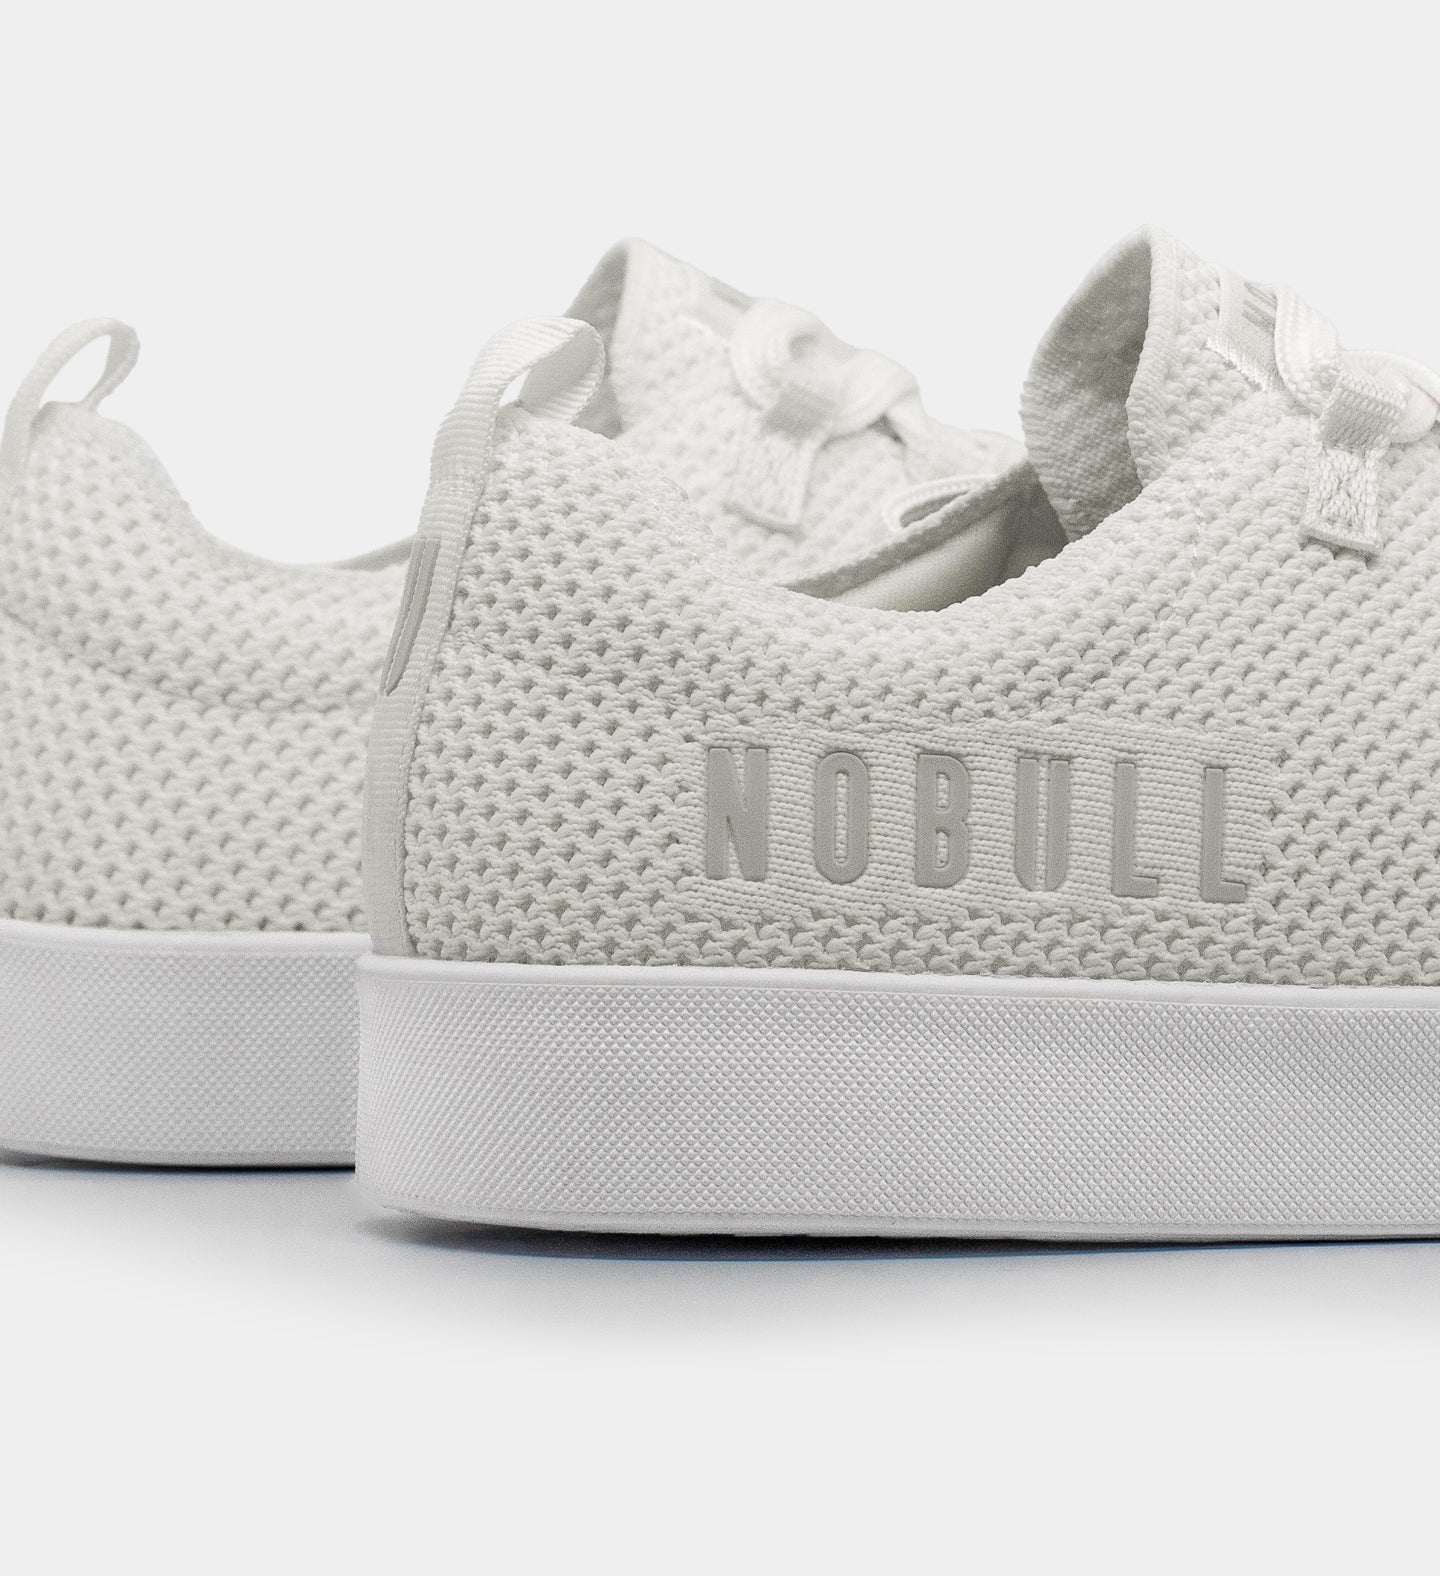 NOBULL - Women's Court Trainer - White - Size 7.5